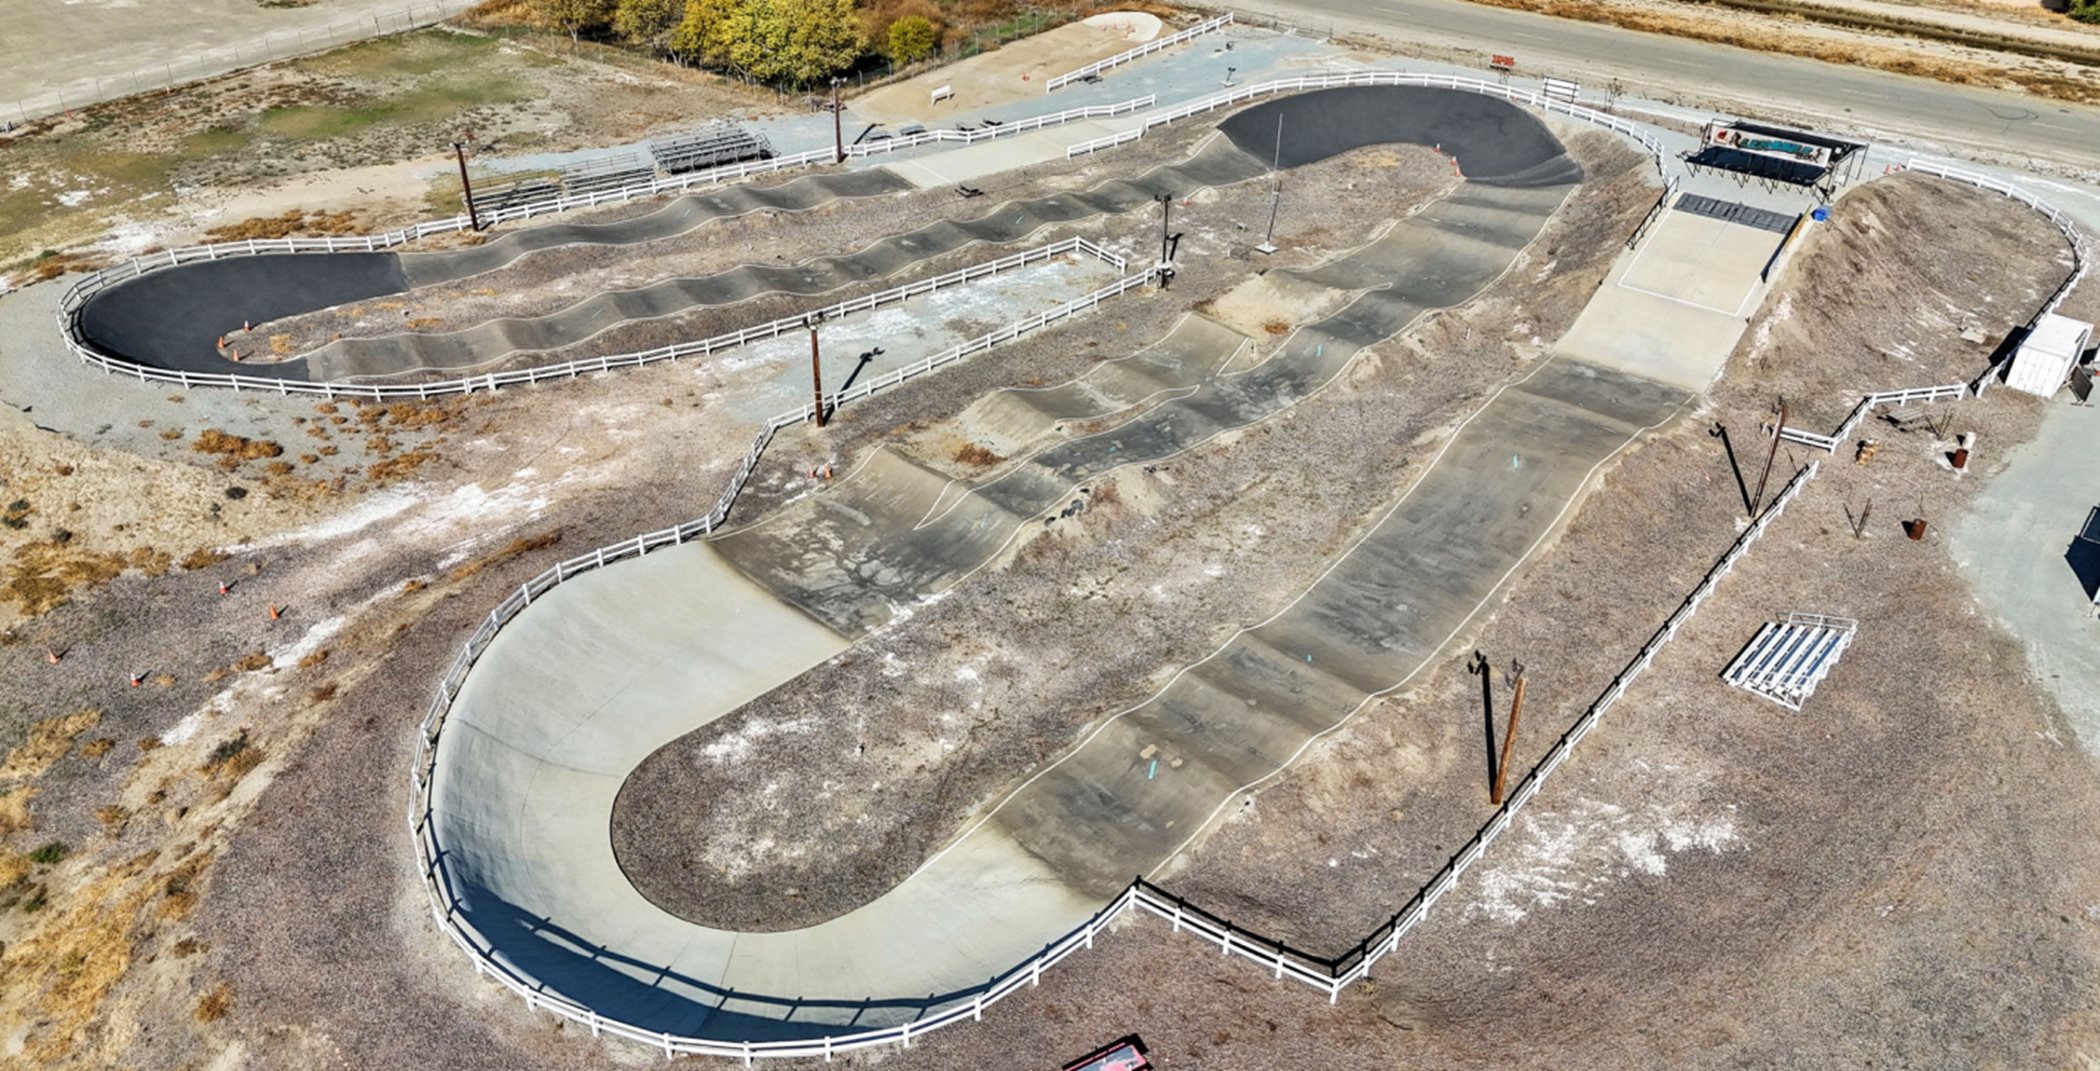 Lemoore Raceway aerial view of race track